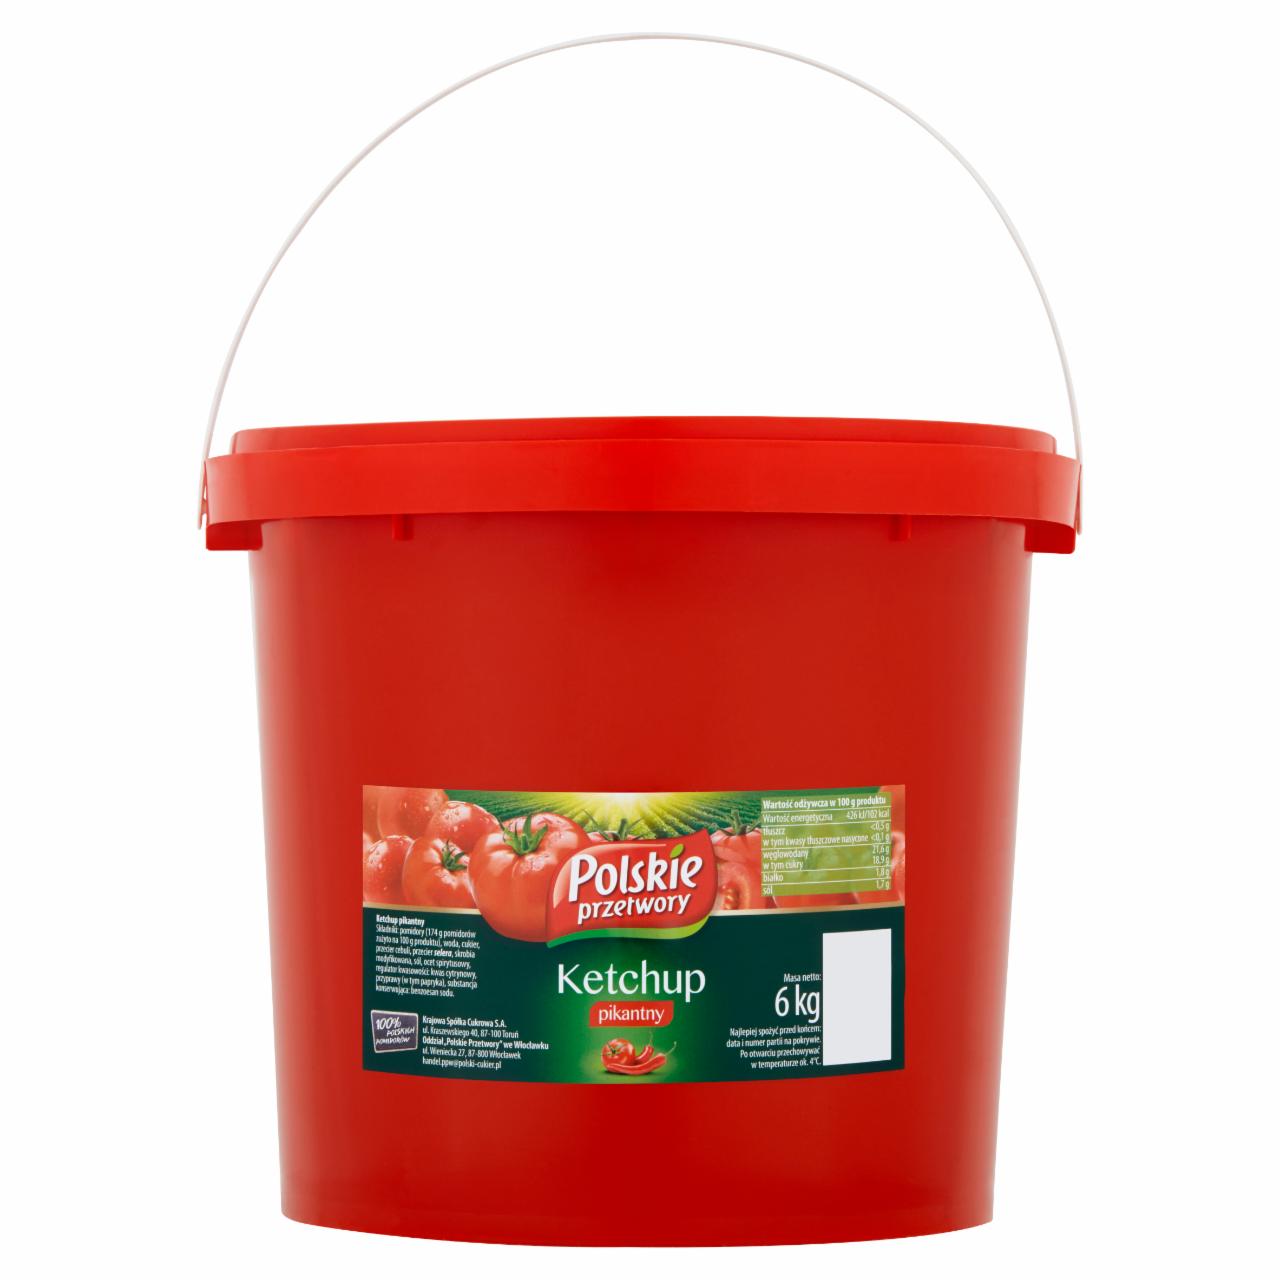 Zdjęcia - Polskie przetwory Ketchup pikantny 6 kg